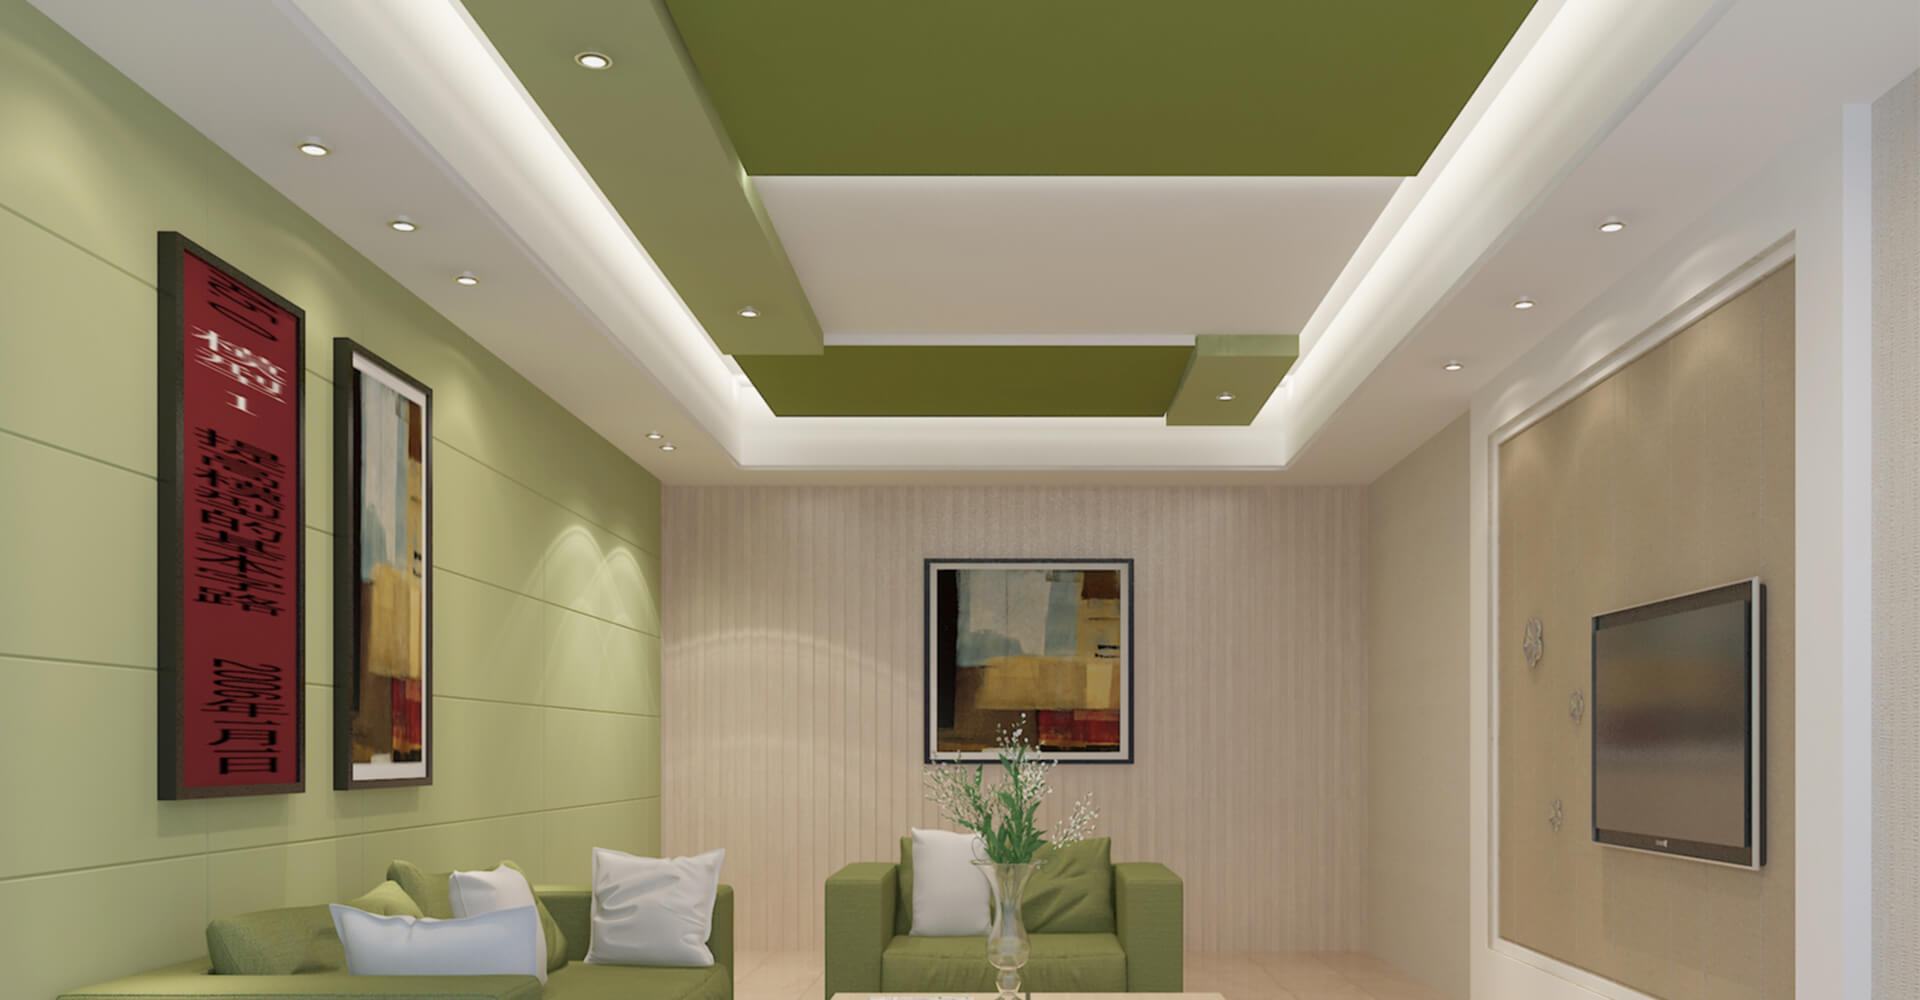 Gypsum ceiling kenya living room 0124